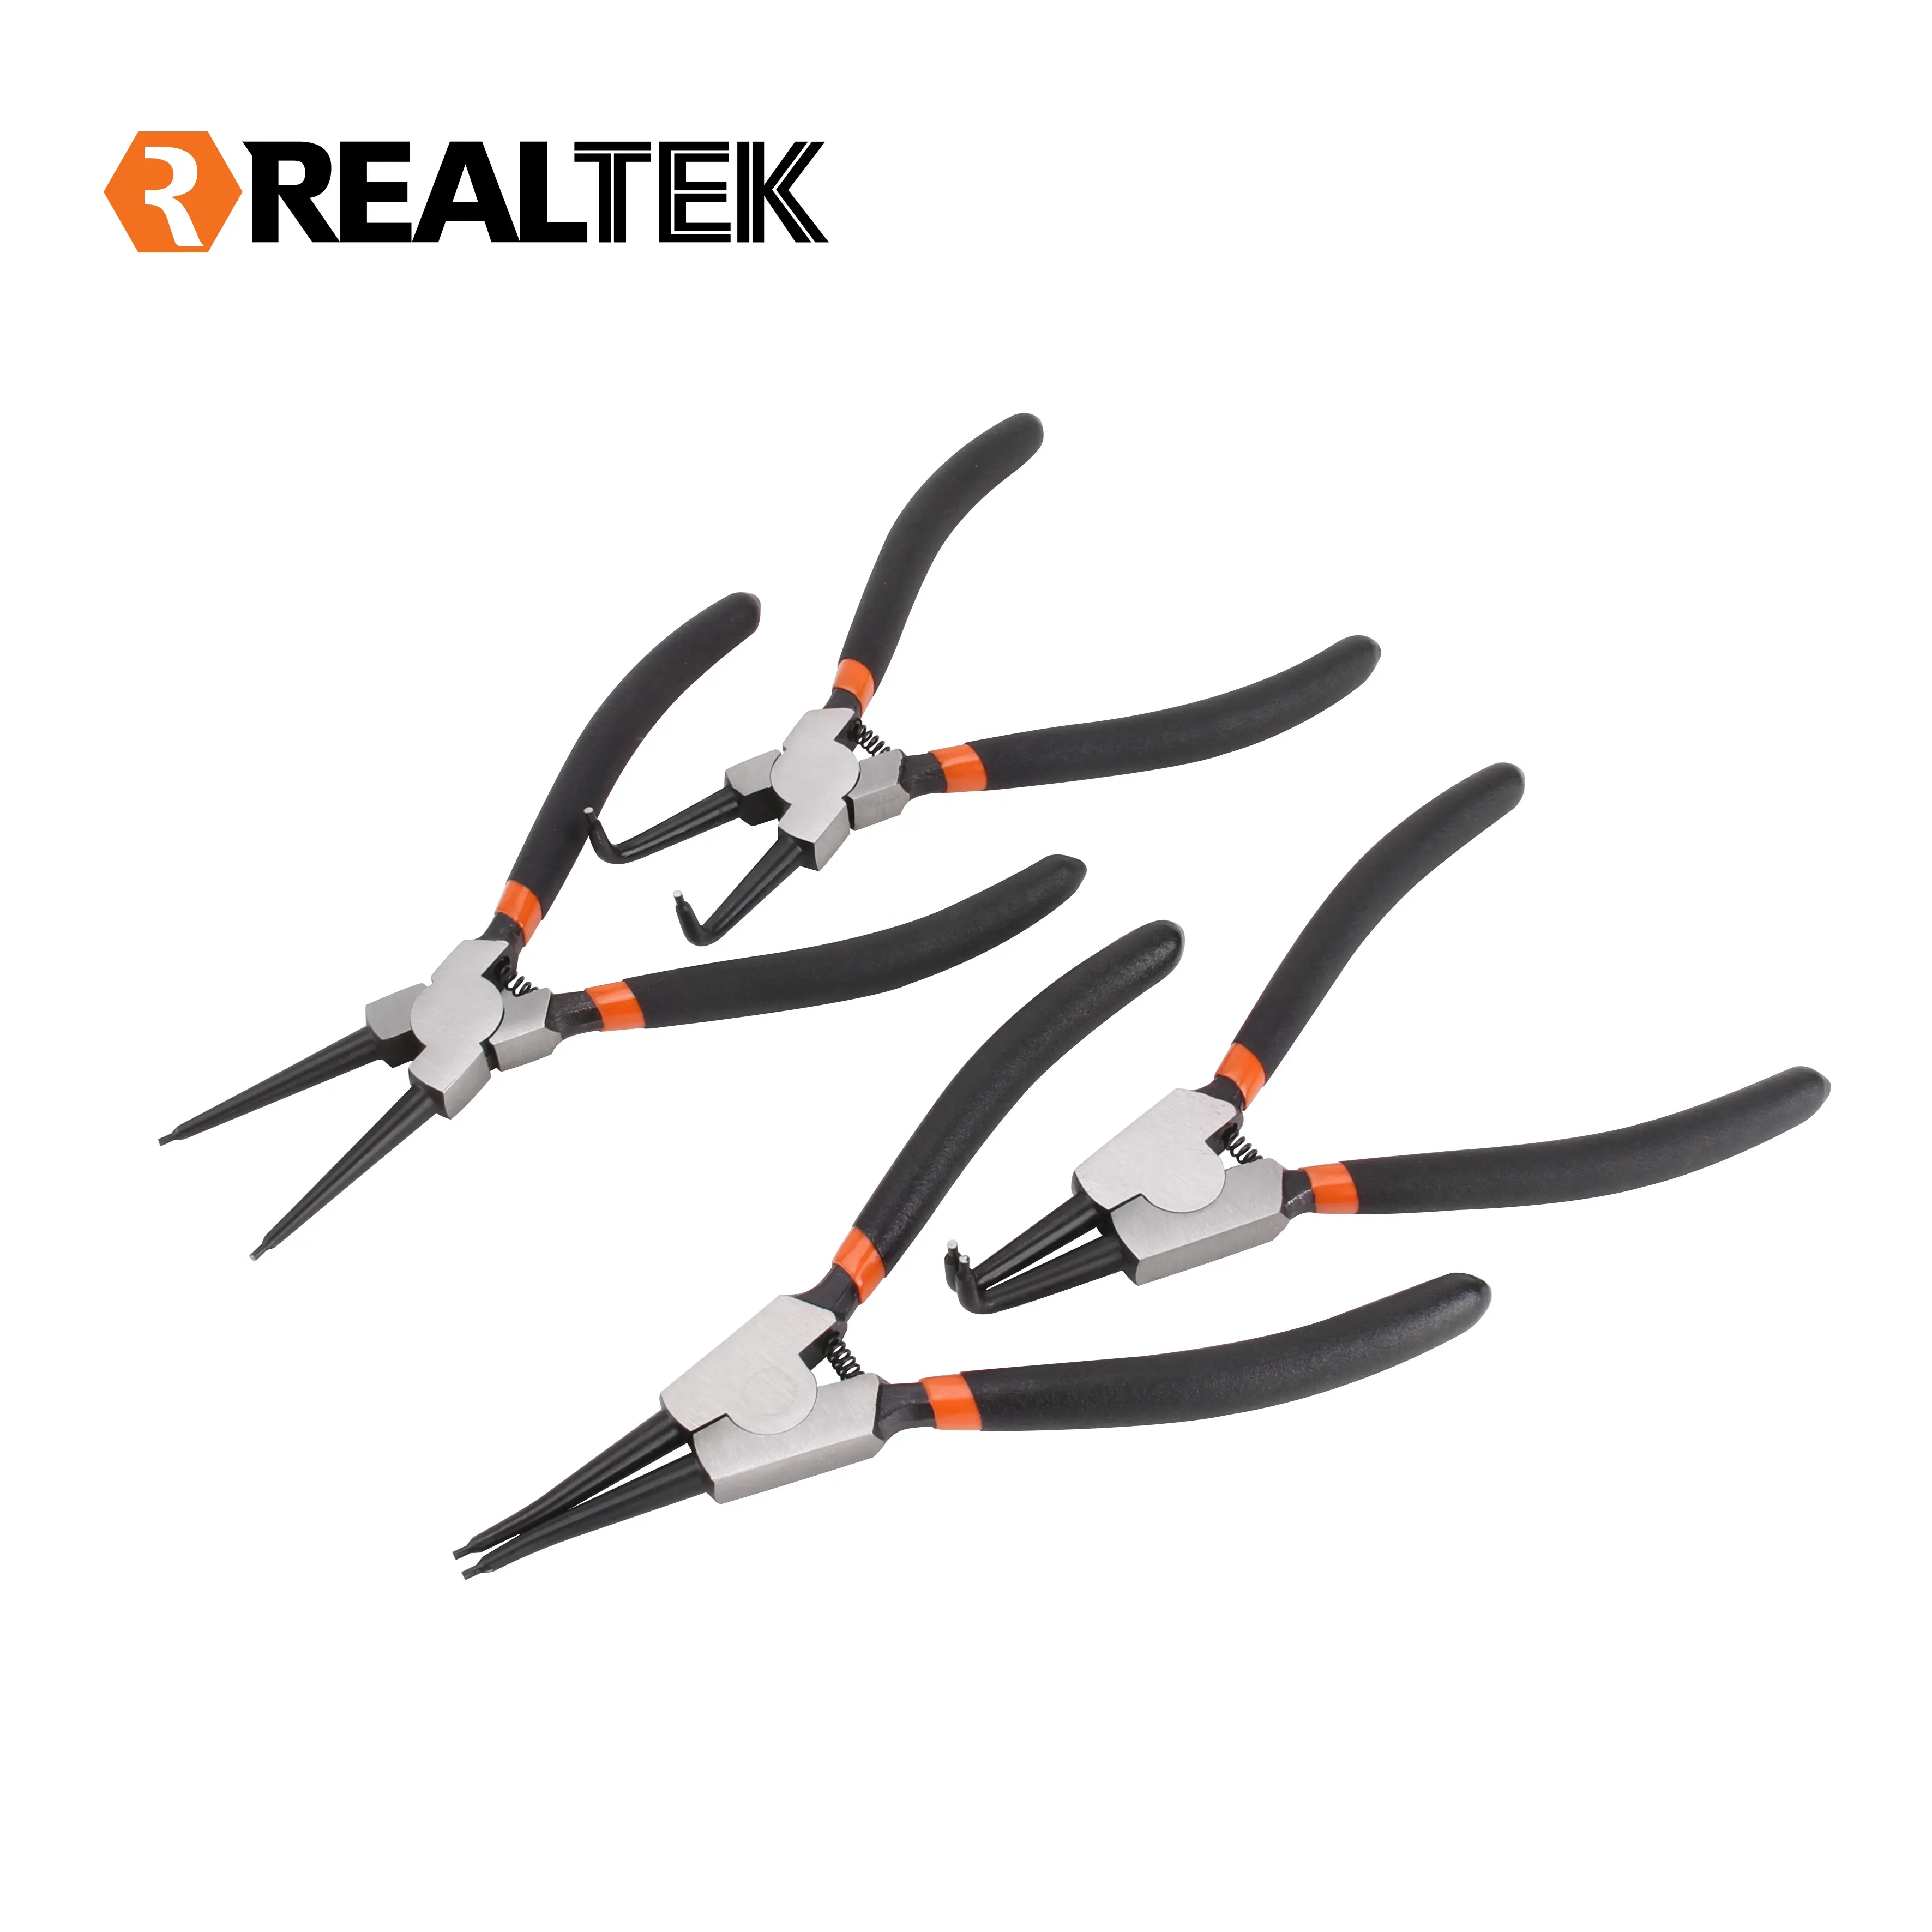 Realtek 4-teiliges Sicherungs ring zangen set mit zweifarbigen Handwerkzeugen mit Tauch griff